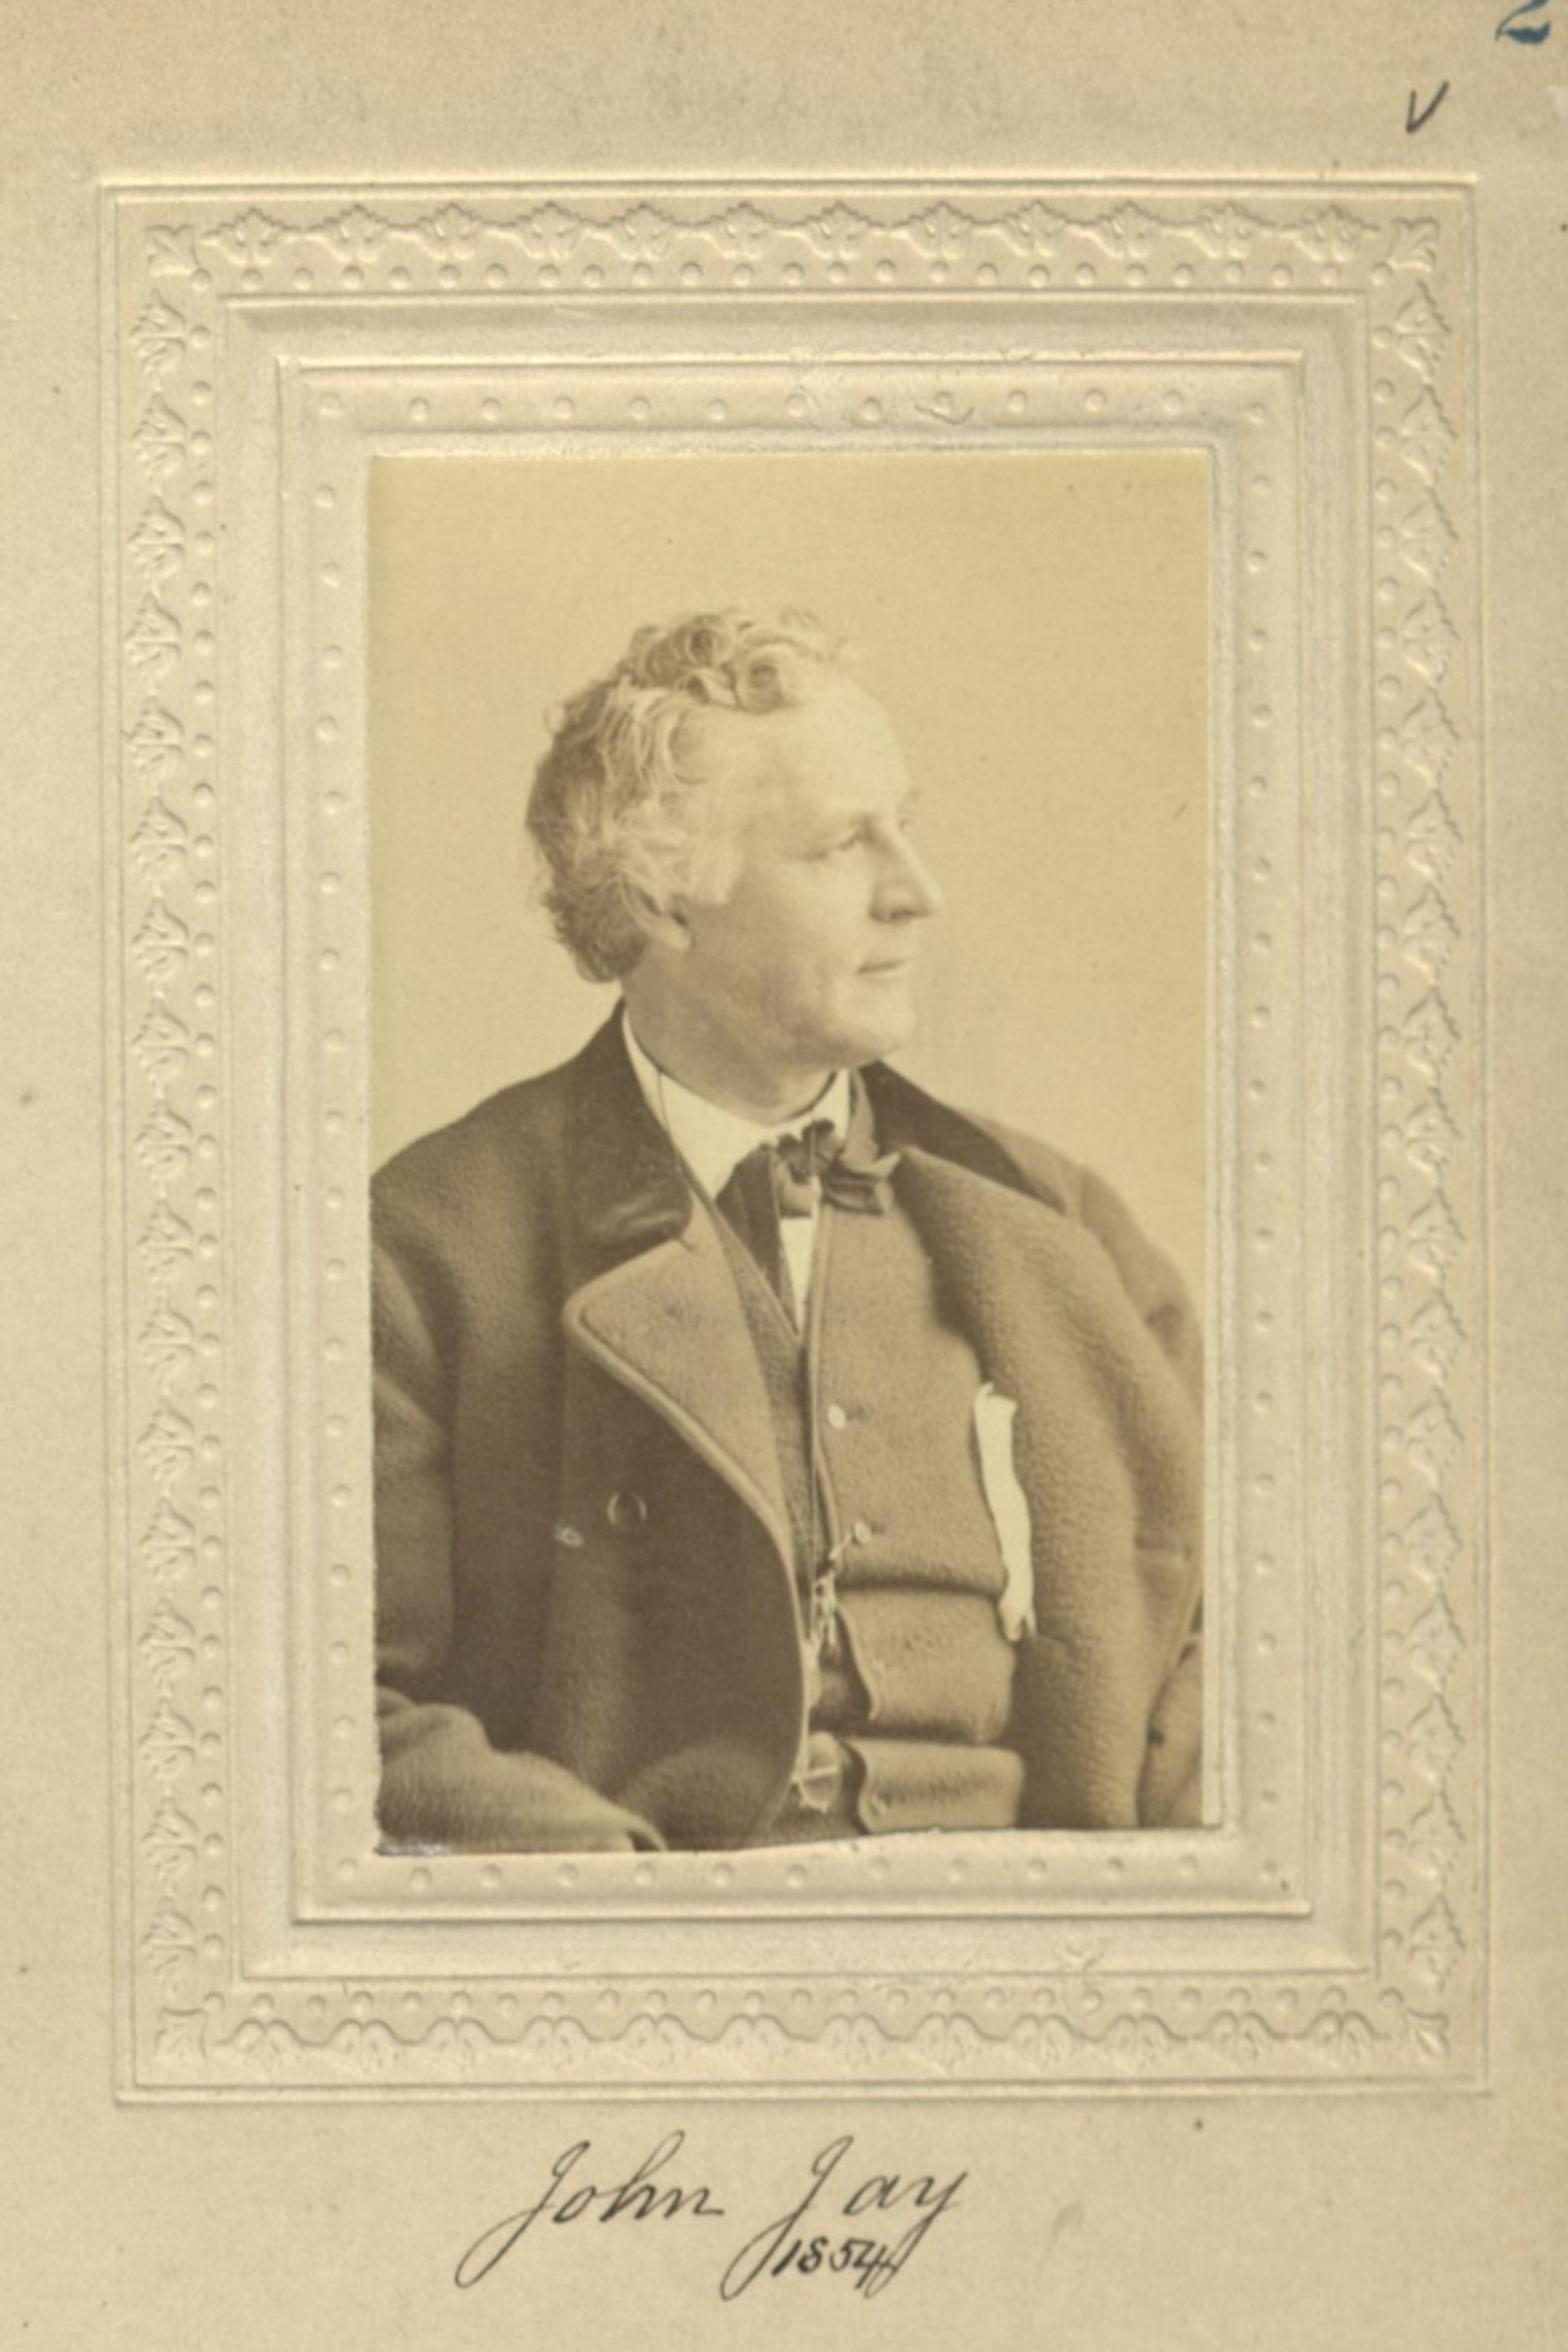 Member portrait of John Jay